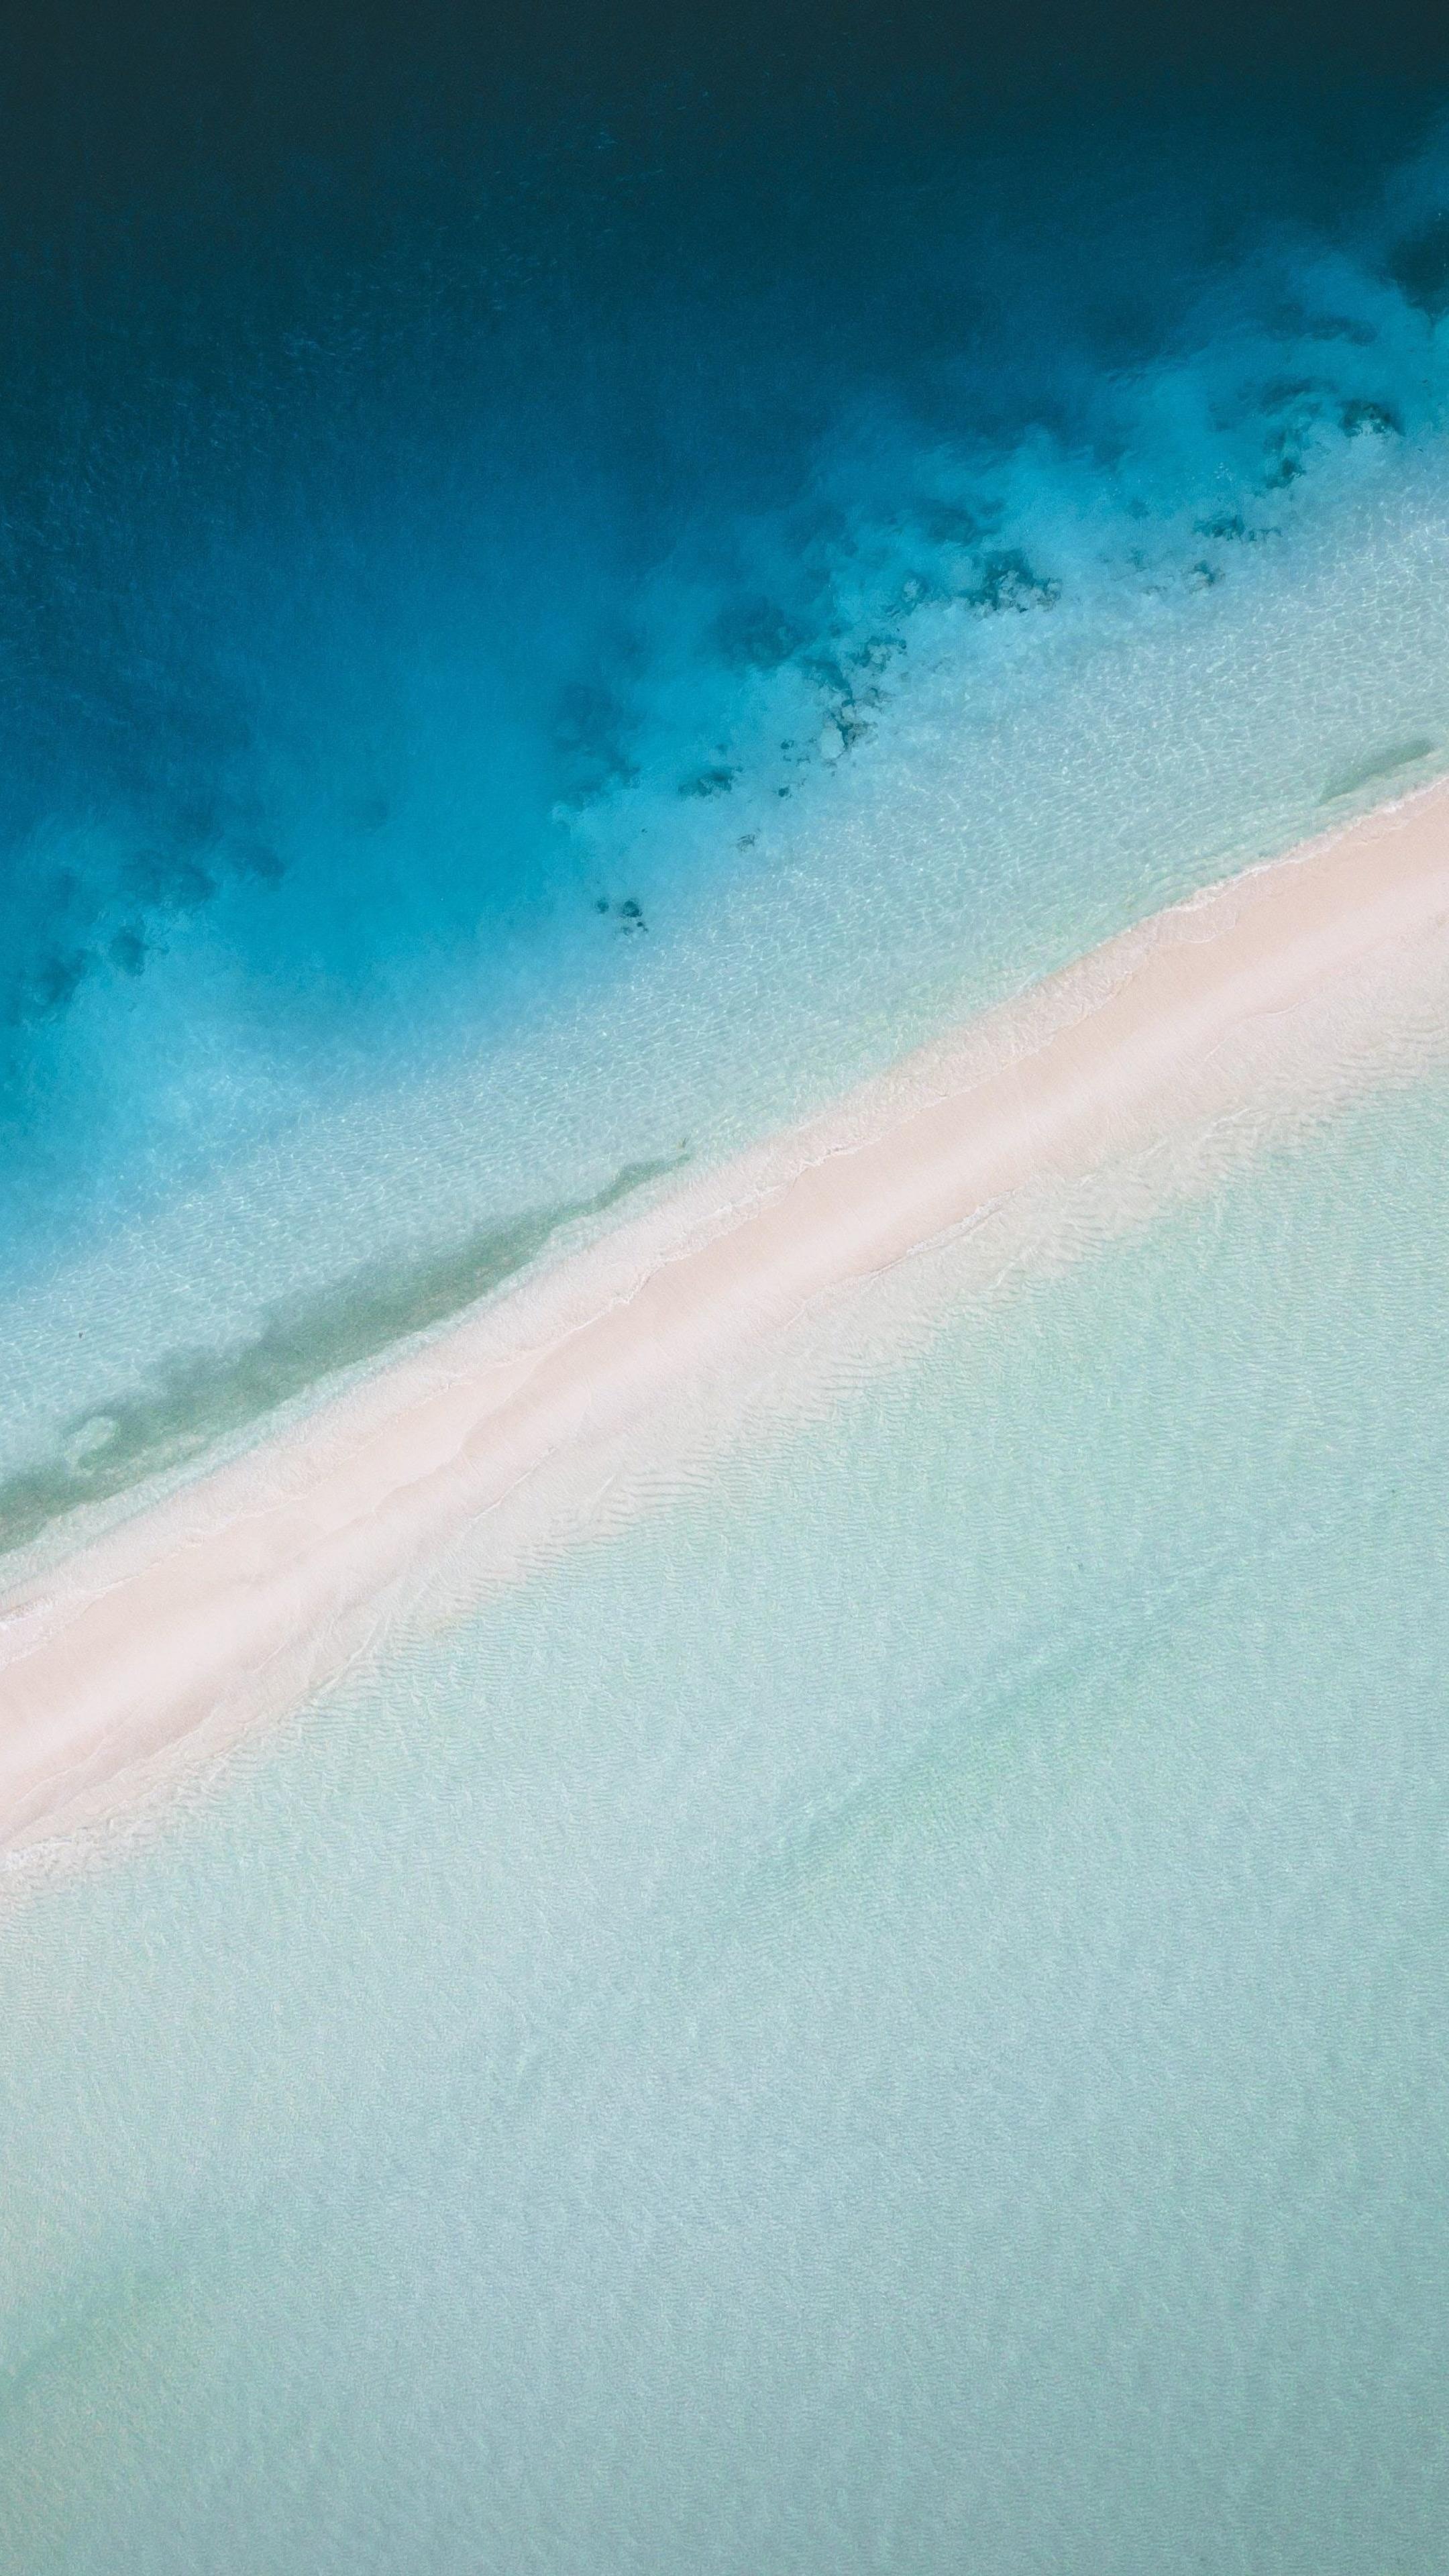 Maldives Island Aerial View 4k Sony Xperia X, XZ, Z5 Premium